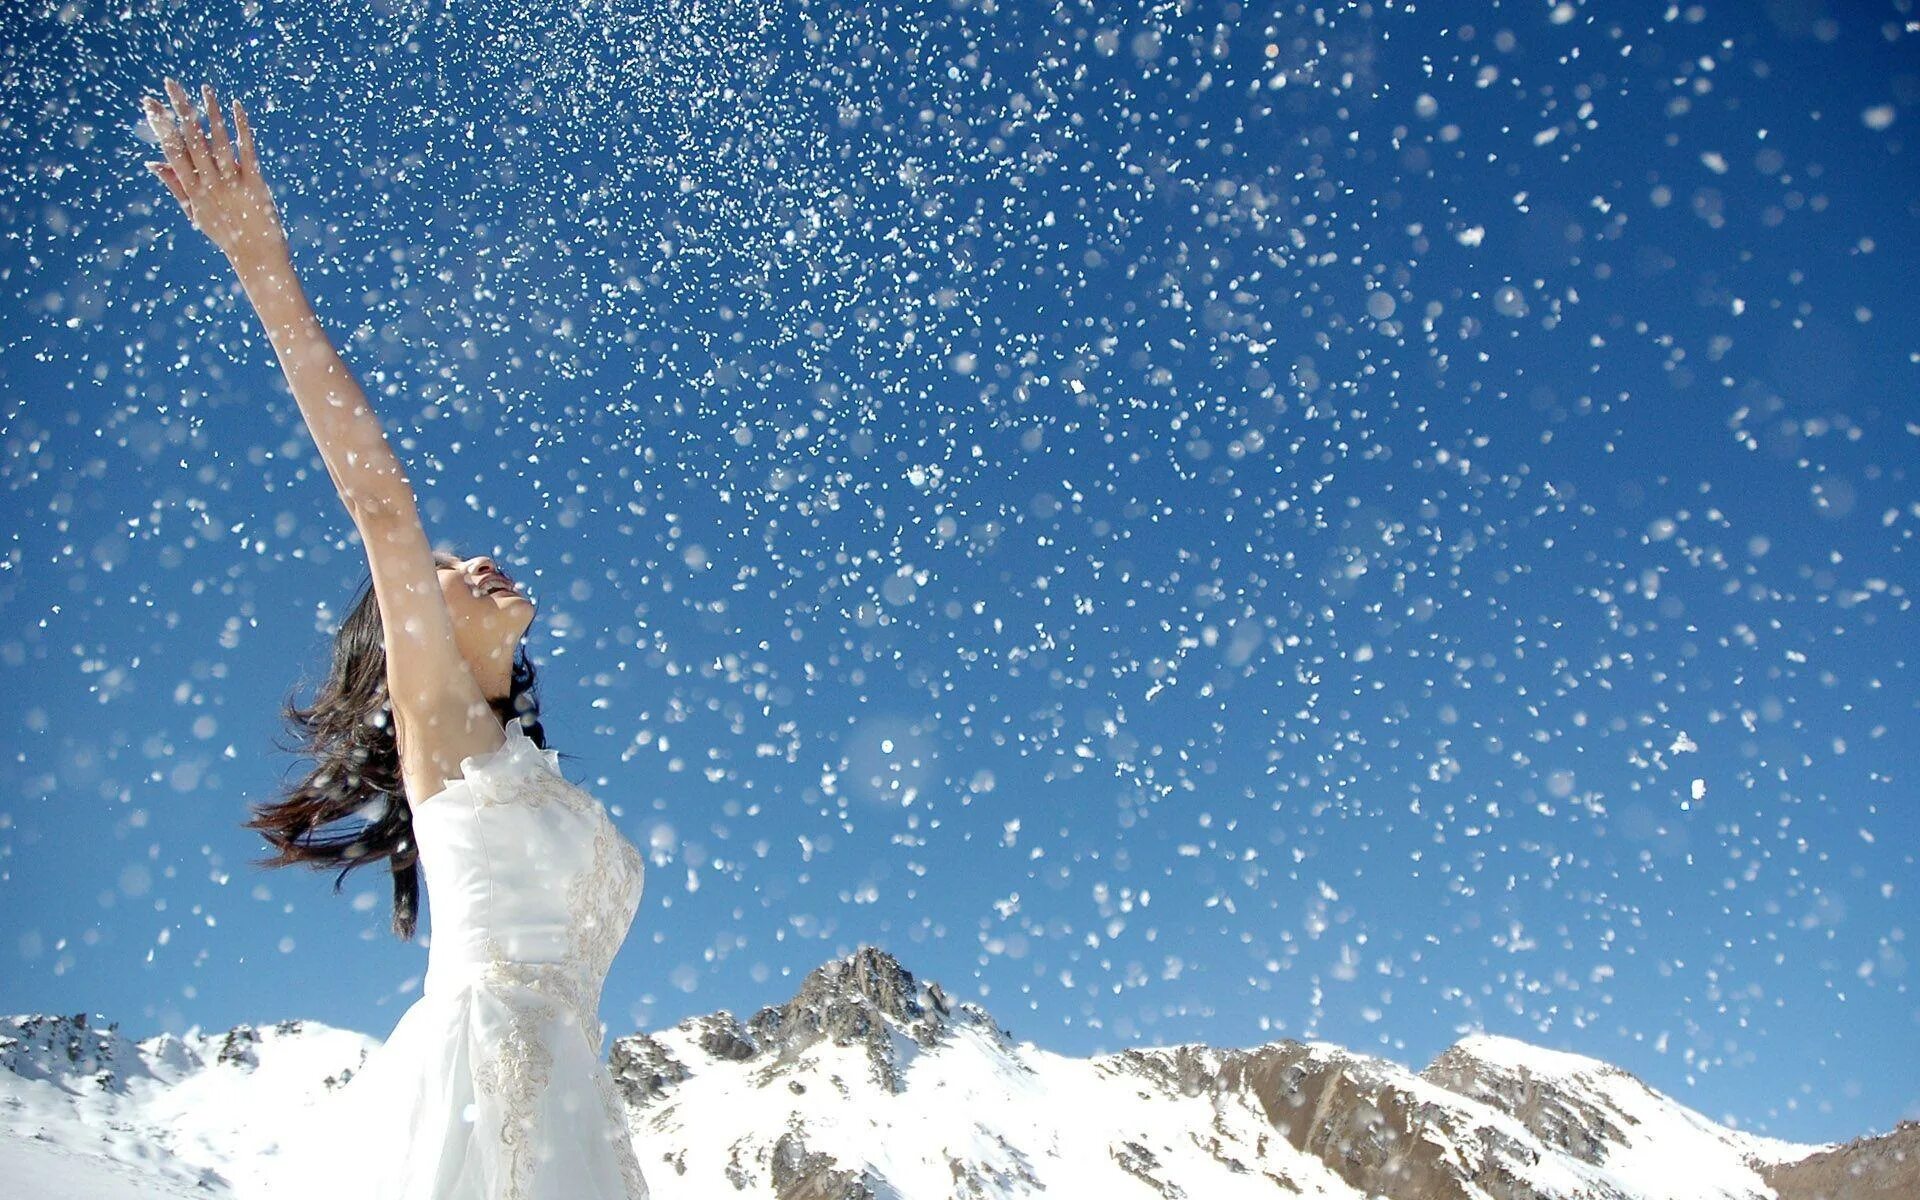 Полетел снег. Снег радость. Счастье снег. Девушка в снегу. Снег падает с неба.